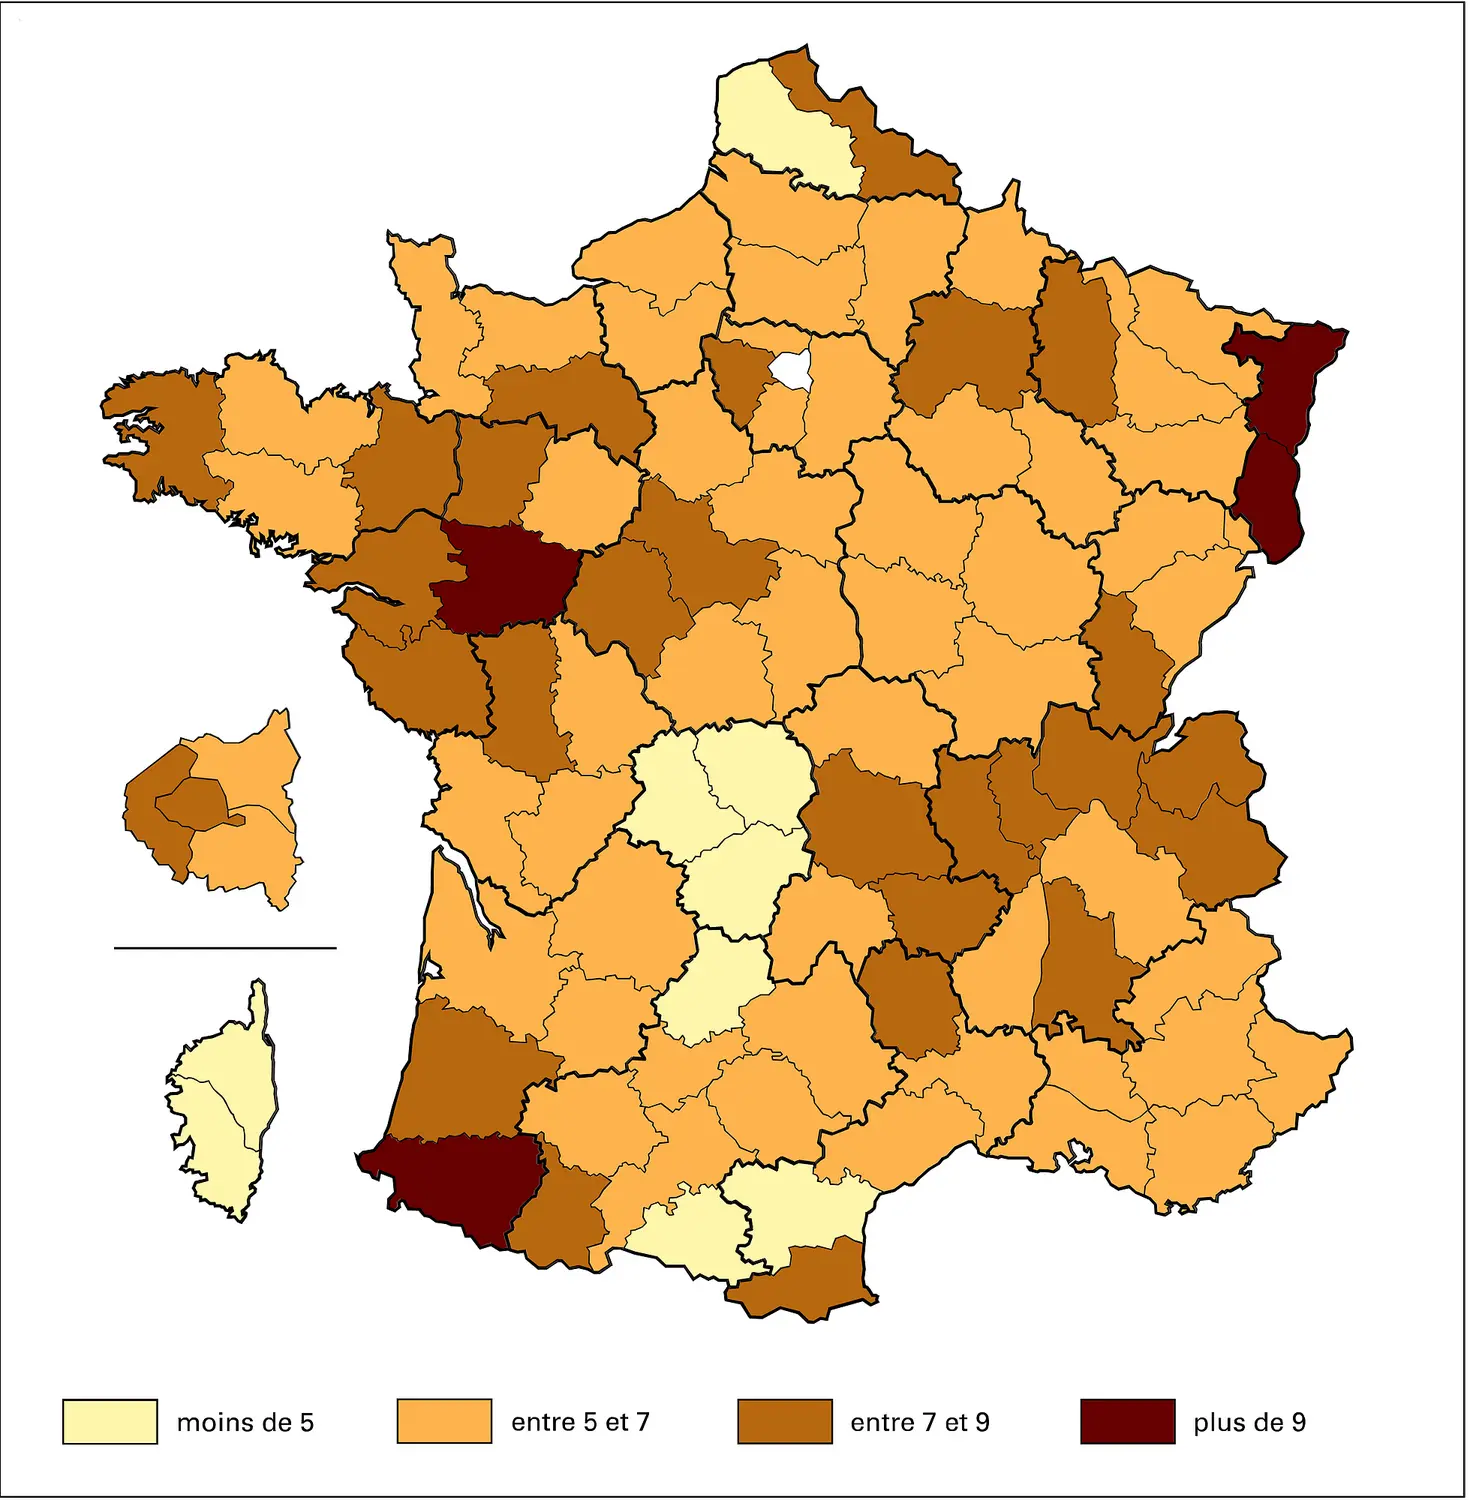 France : élection présidentielle de 2002, le vote Bayrou